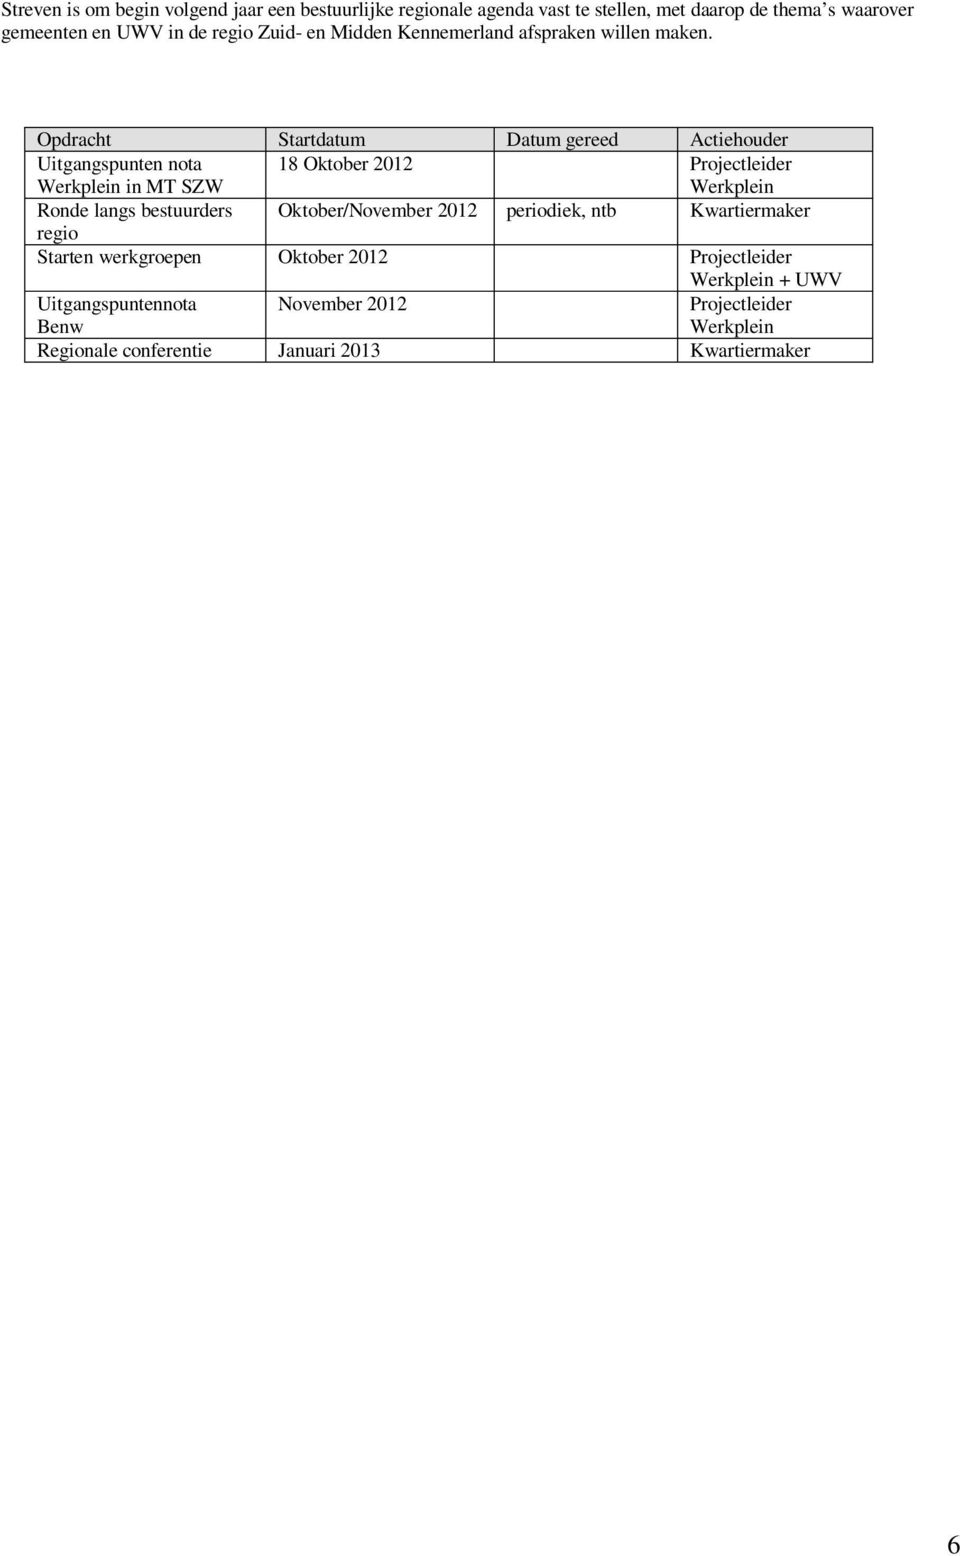 Opdracht Startdatum Datum gereed Actiehouder Uitgangspunten nota Werkplein in MT SZW 18 Oktober 2012 Projectleider Werkplein Ronde langs